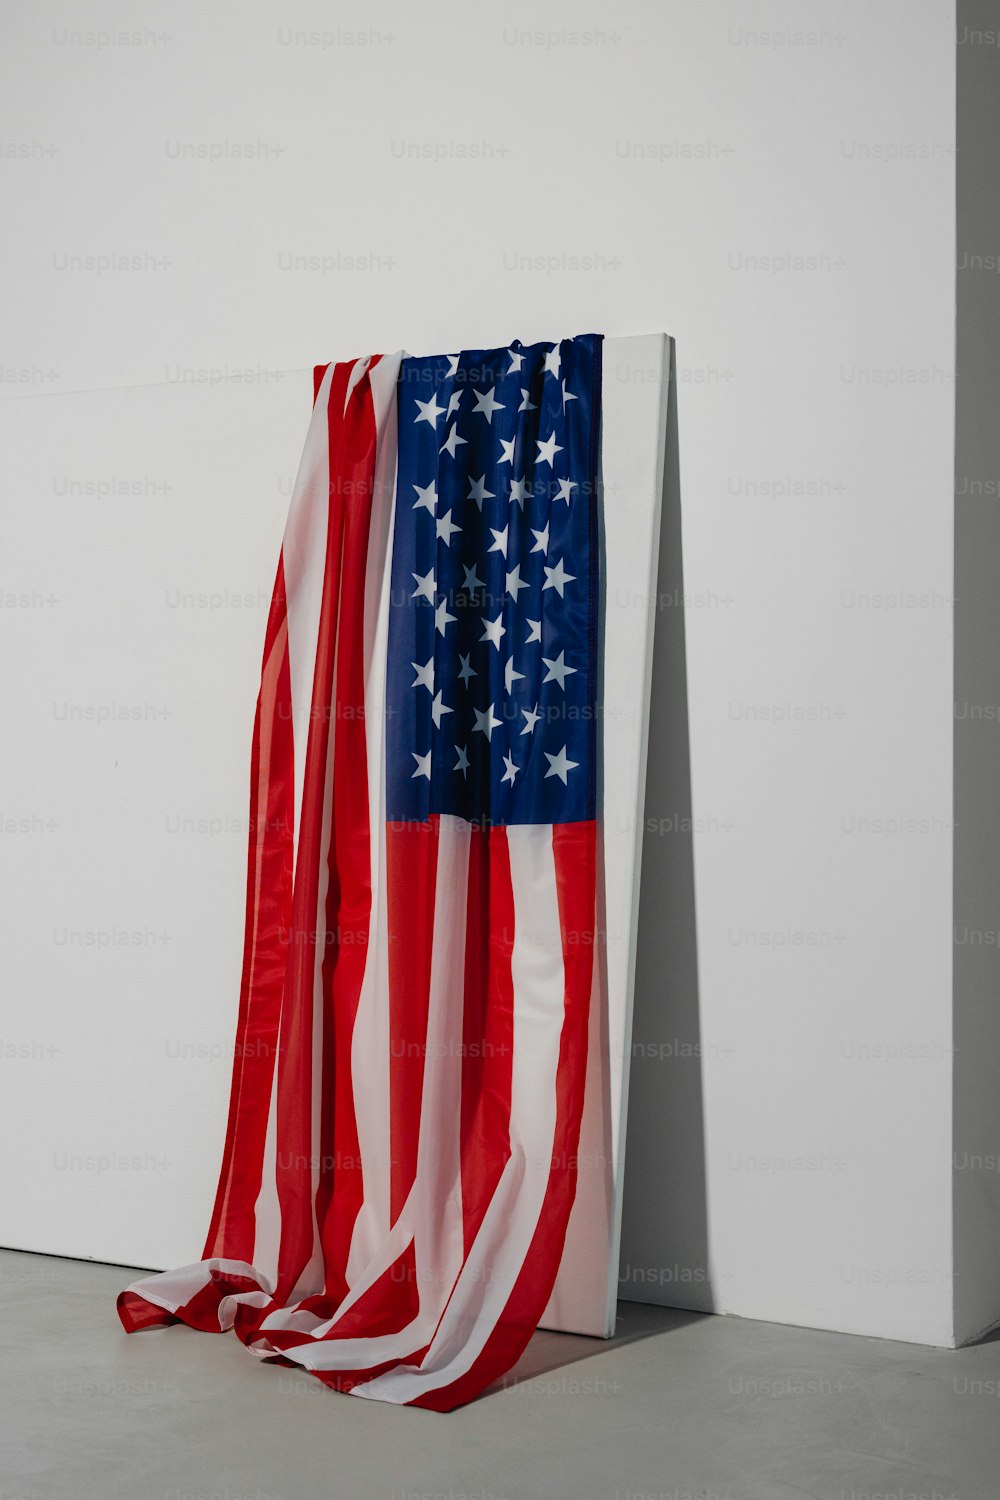 Eine amerikanische Flagge in Rot, Weiß und Blau